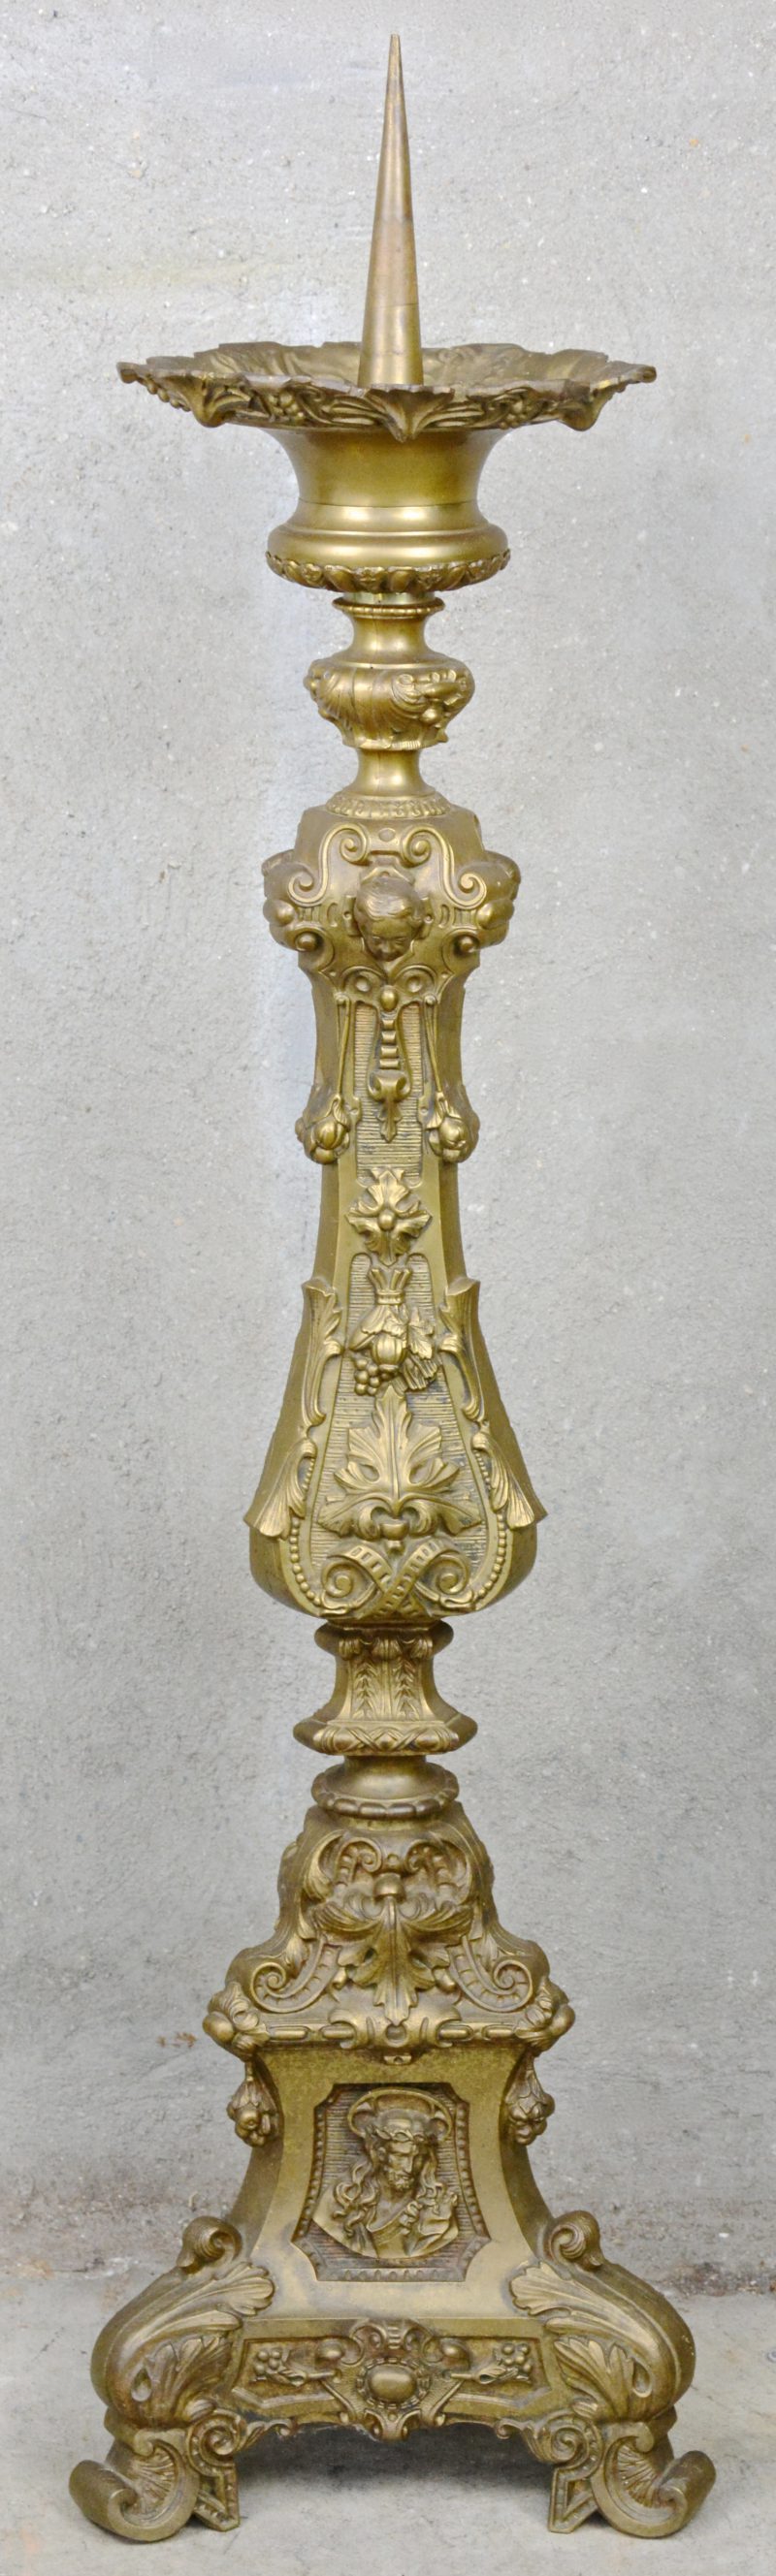 Een grote barokke kerkkandelaar van gedreven messing. Driehoekige basis met Heilige Harten, uitgebreide bladmotieven op de schacht, bovenaan drie engelenkopjes in reliëf.